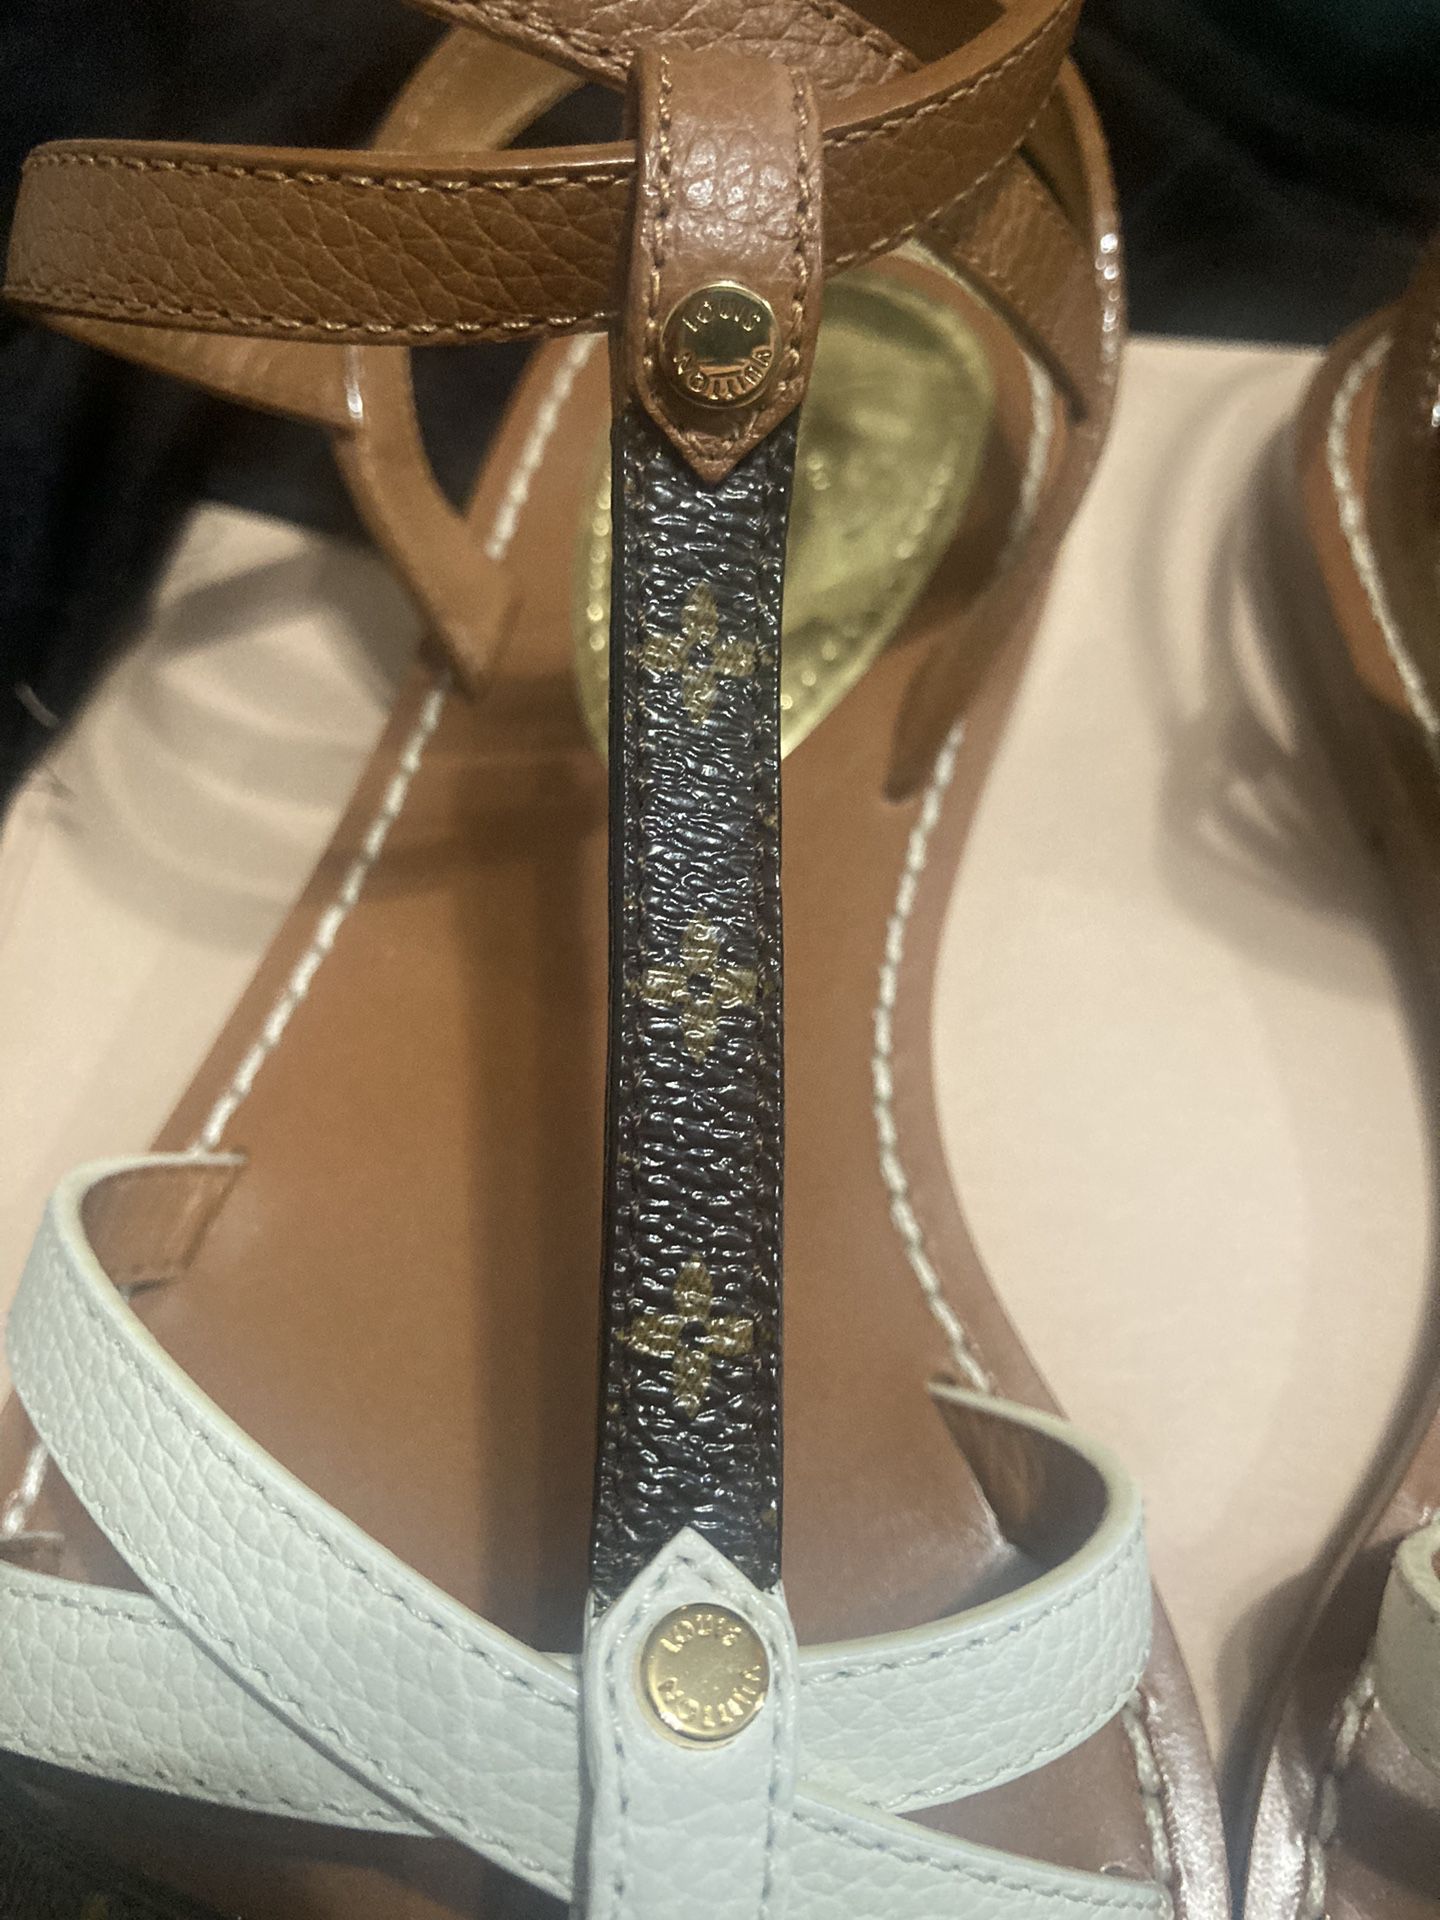 Louis Vuitton Sunbath Flat Mule Sandal Women for Sale in Brea, CA - OfferUp